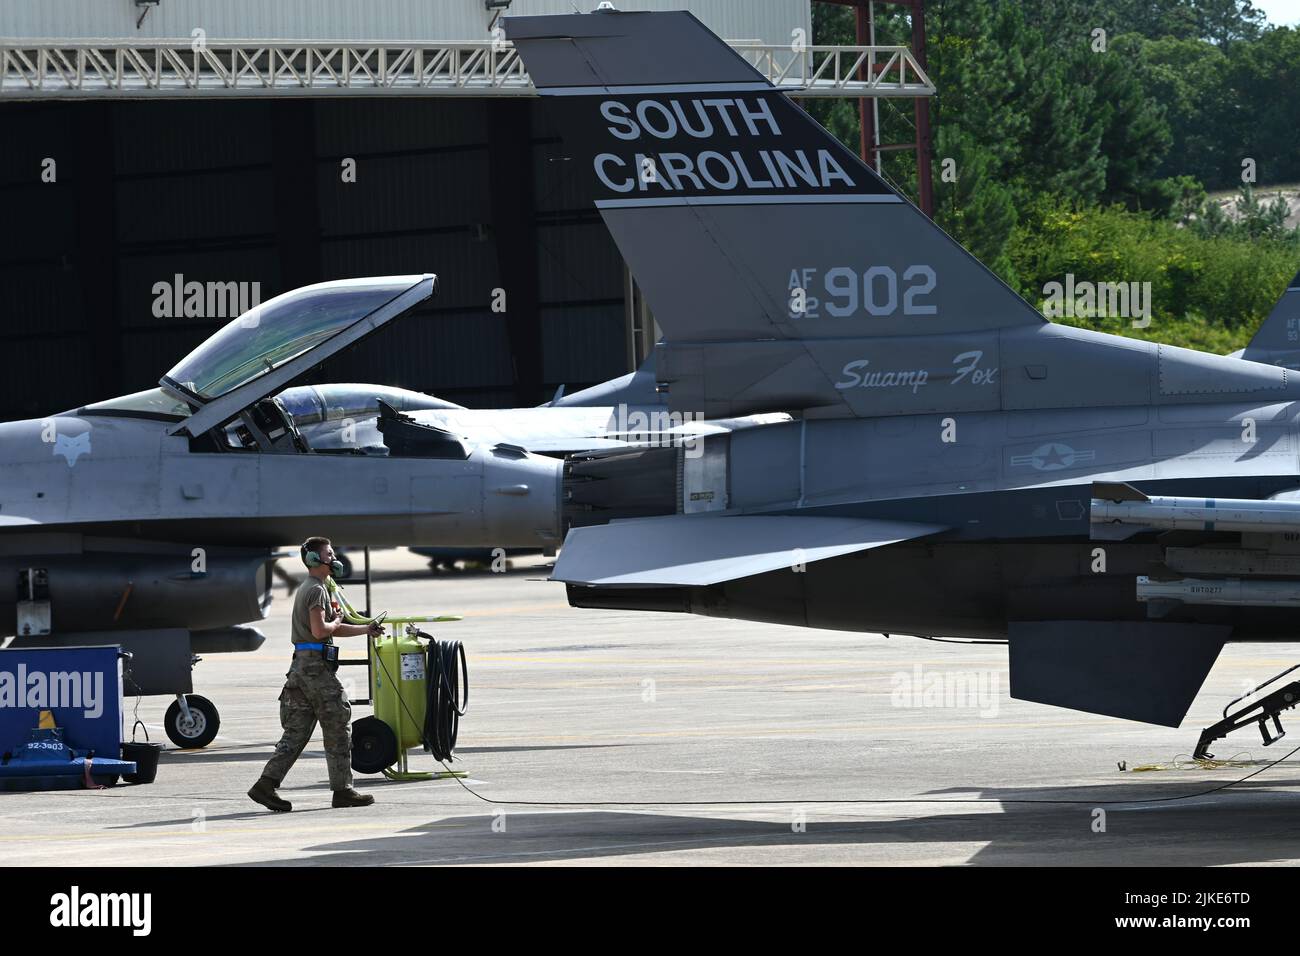 Los jefes de la tripulación de la Fuerza Aérea de los EE.UU. Del Grupo de Mantenimiento 169th de la Guardia Nacional Aérea de Carolina del Sur preparan el F-16 luchando contra los halcones del Escuadrón de Combate 157th para una sortita de entrenamiento diaria en el Aeropuerto Metropolitano de Columbia, Columbia, Carolina del Sur, 27 de julio de 2022. El SCANG está actualmente volando desde el Aeropuerto Metropolitano de Columbia durante un proyecto de construcción de pista en curso en la Base Conjunta de la Guardia Nacional McEntire, S.C. (U.S. Foto de la Guardia Nacional Aérea por el capitán Stephen Hudson, 169th Fighter Wing Public Affairs) Foto de stock